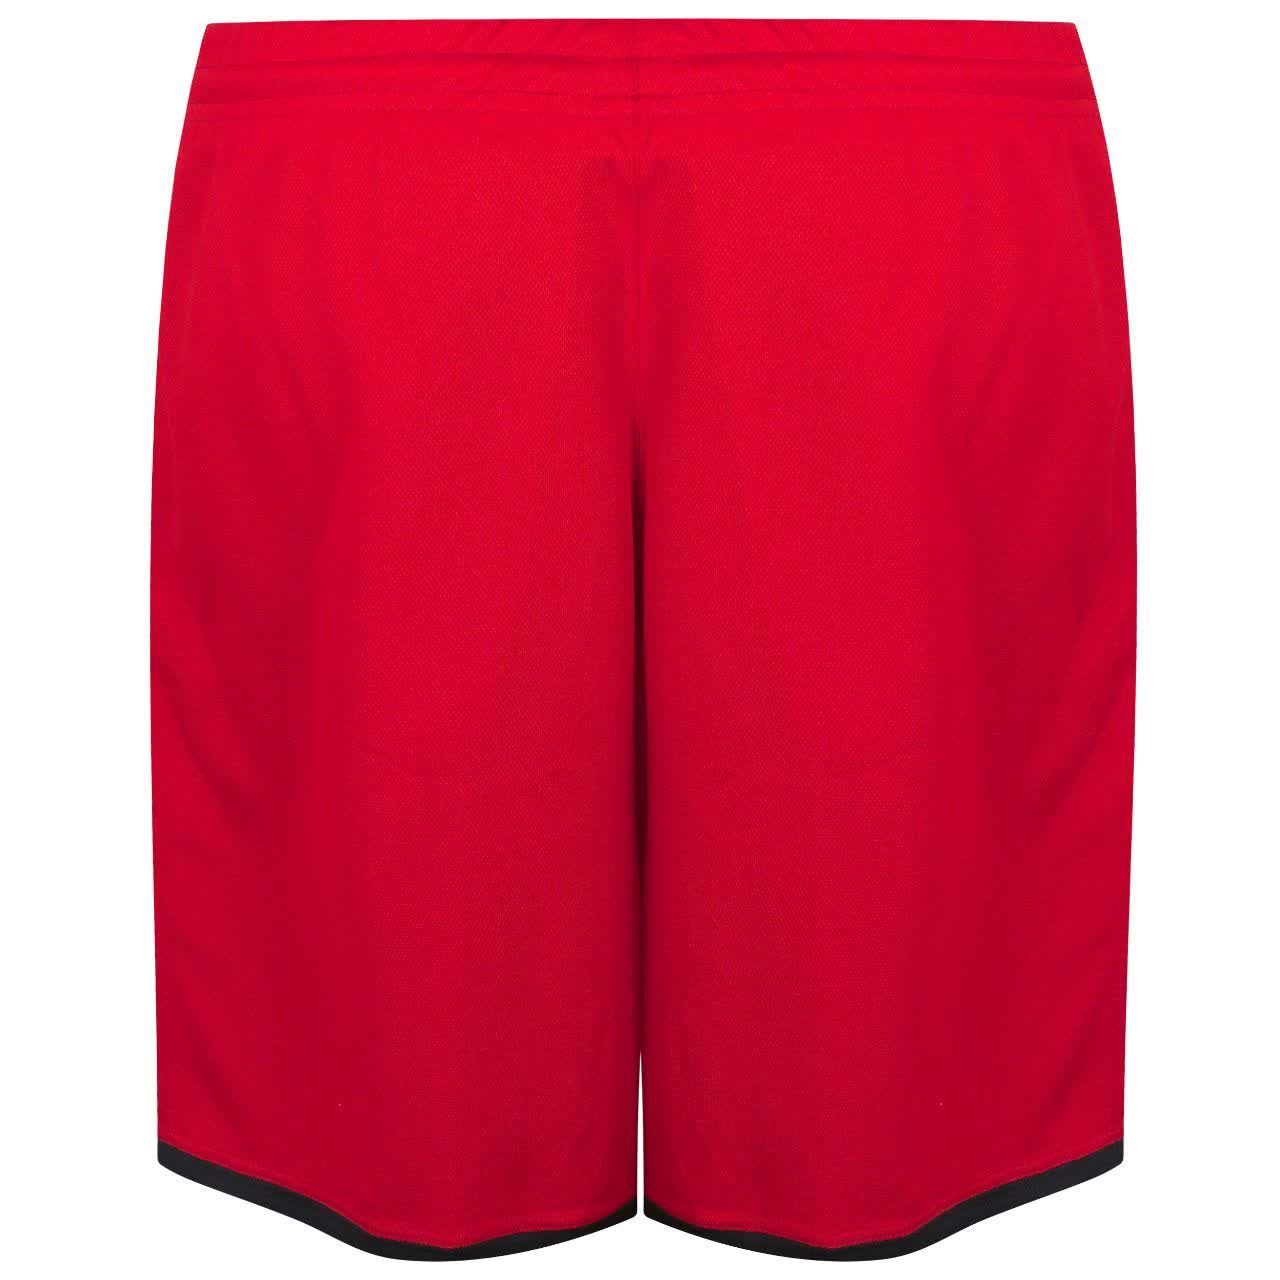 ست تی شرت و شلوارک ورزشی مردانه کالای ورزشی پروین مدل a.s.i.x.6 رنگ قرمز -  - 4